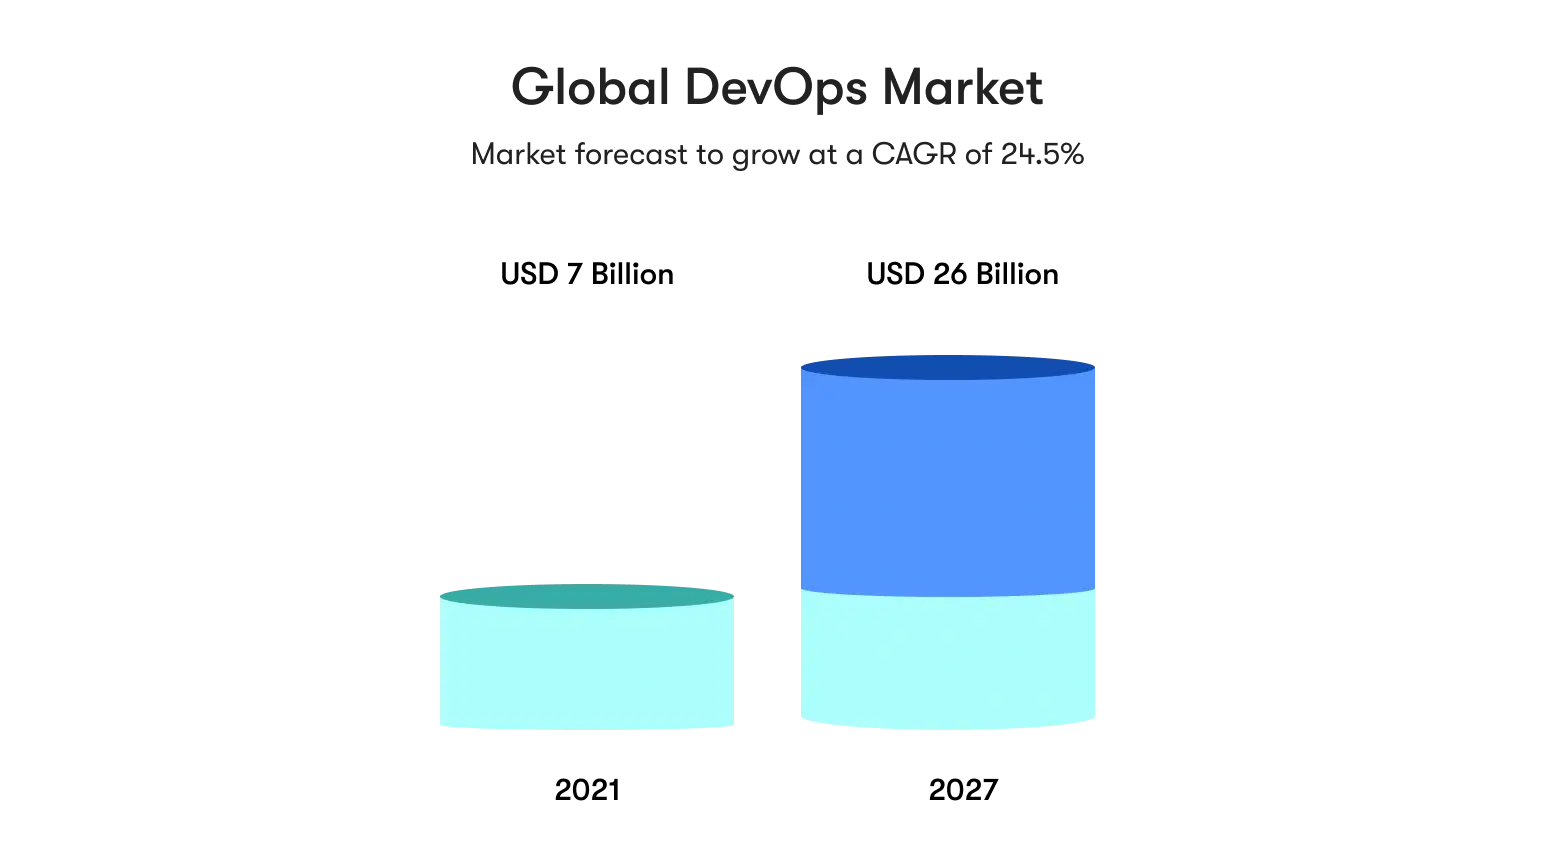 Global devops market illustration